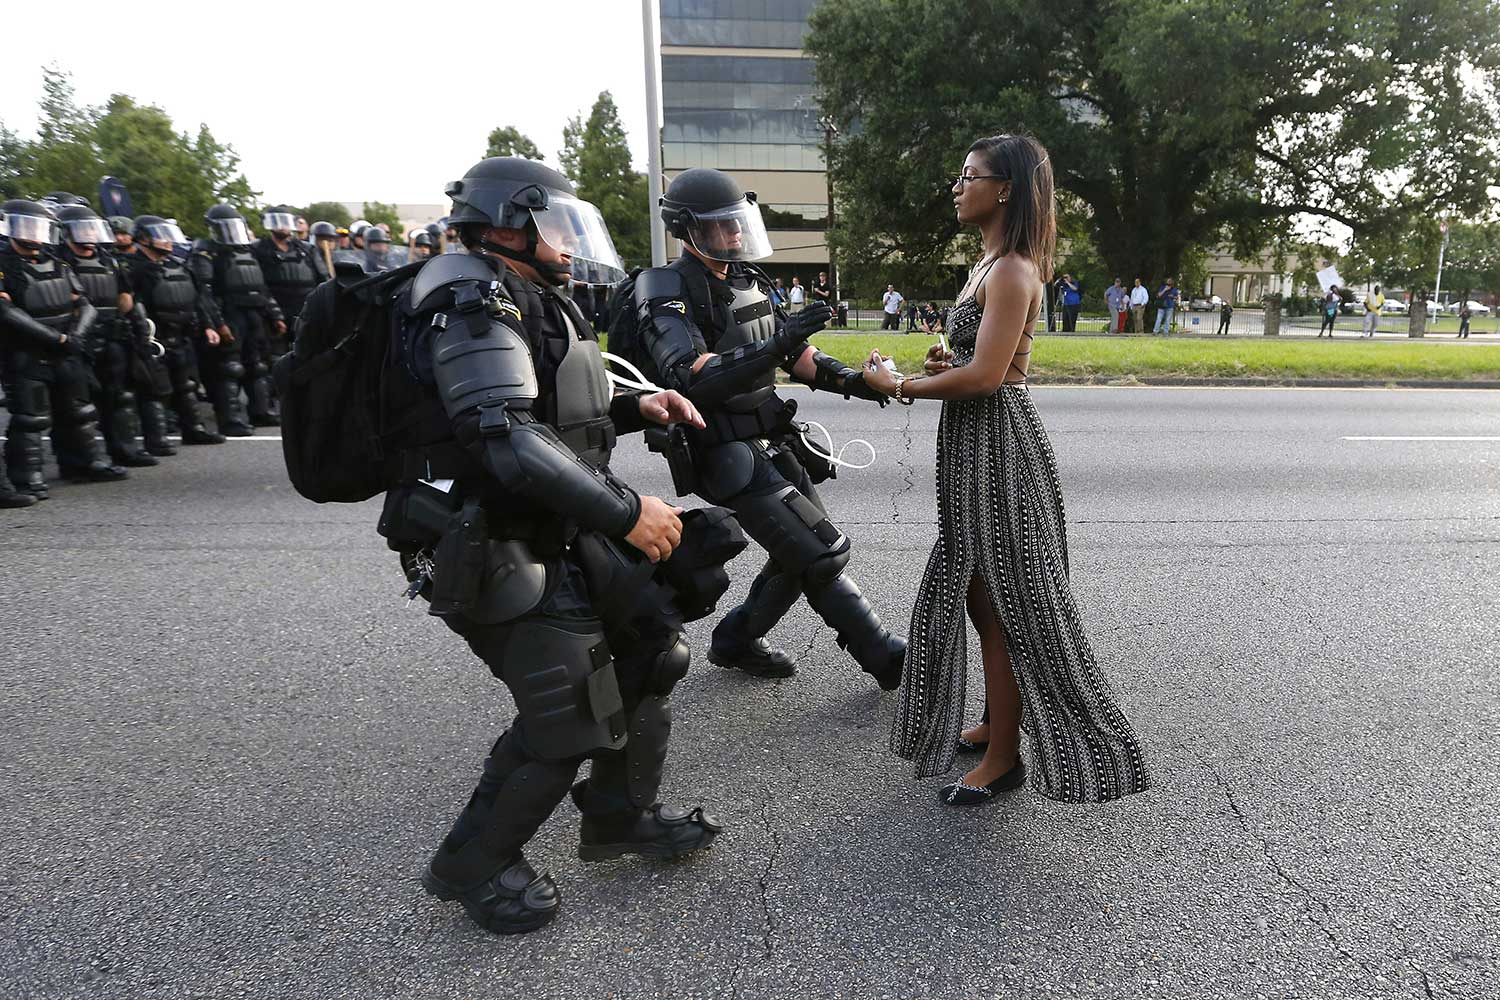 La imagen que se ha convertido en símbolo de la violencia policial en Estados Unidos